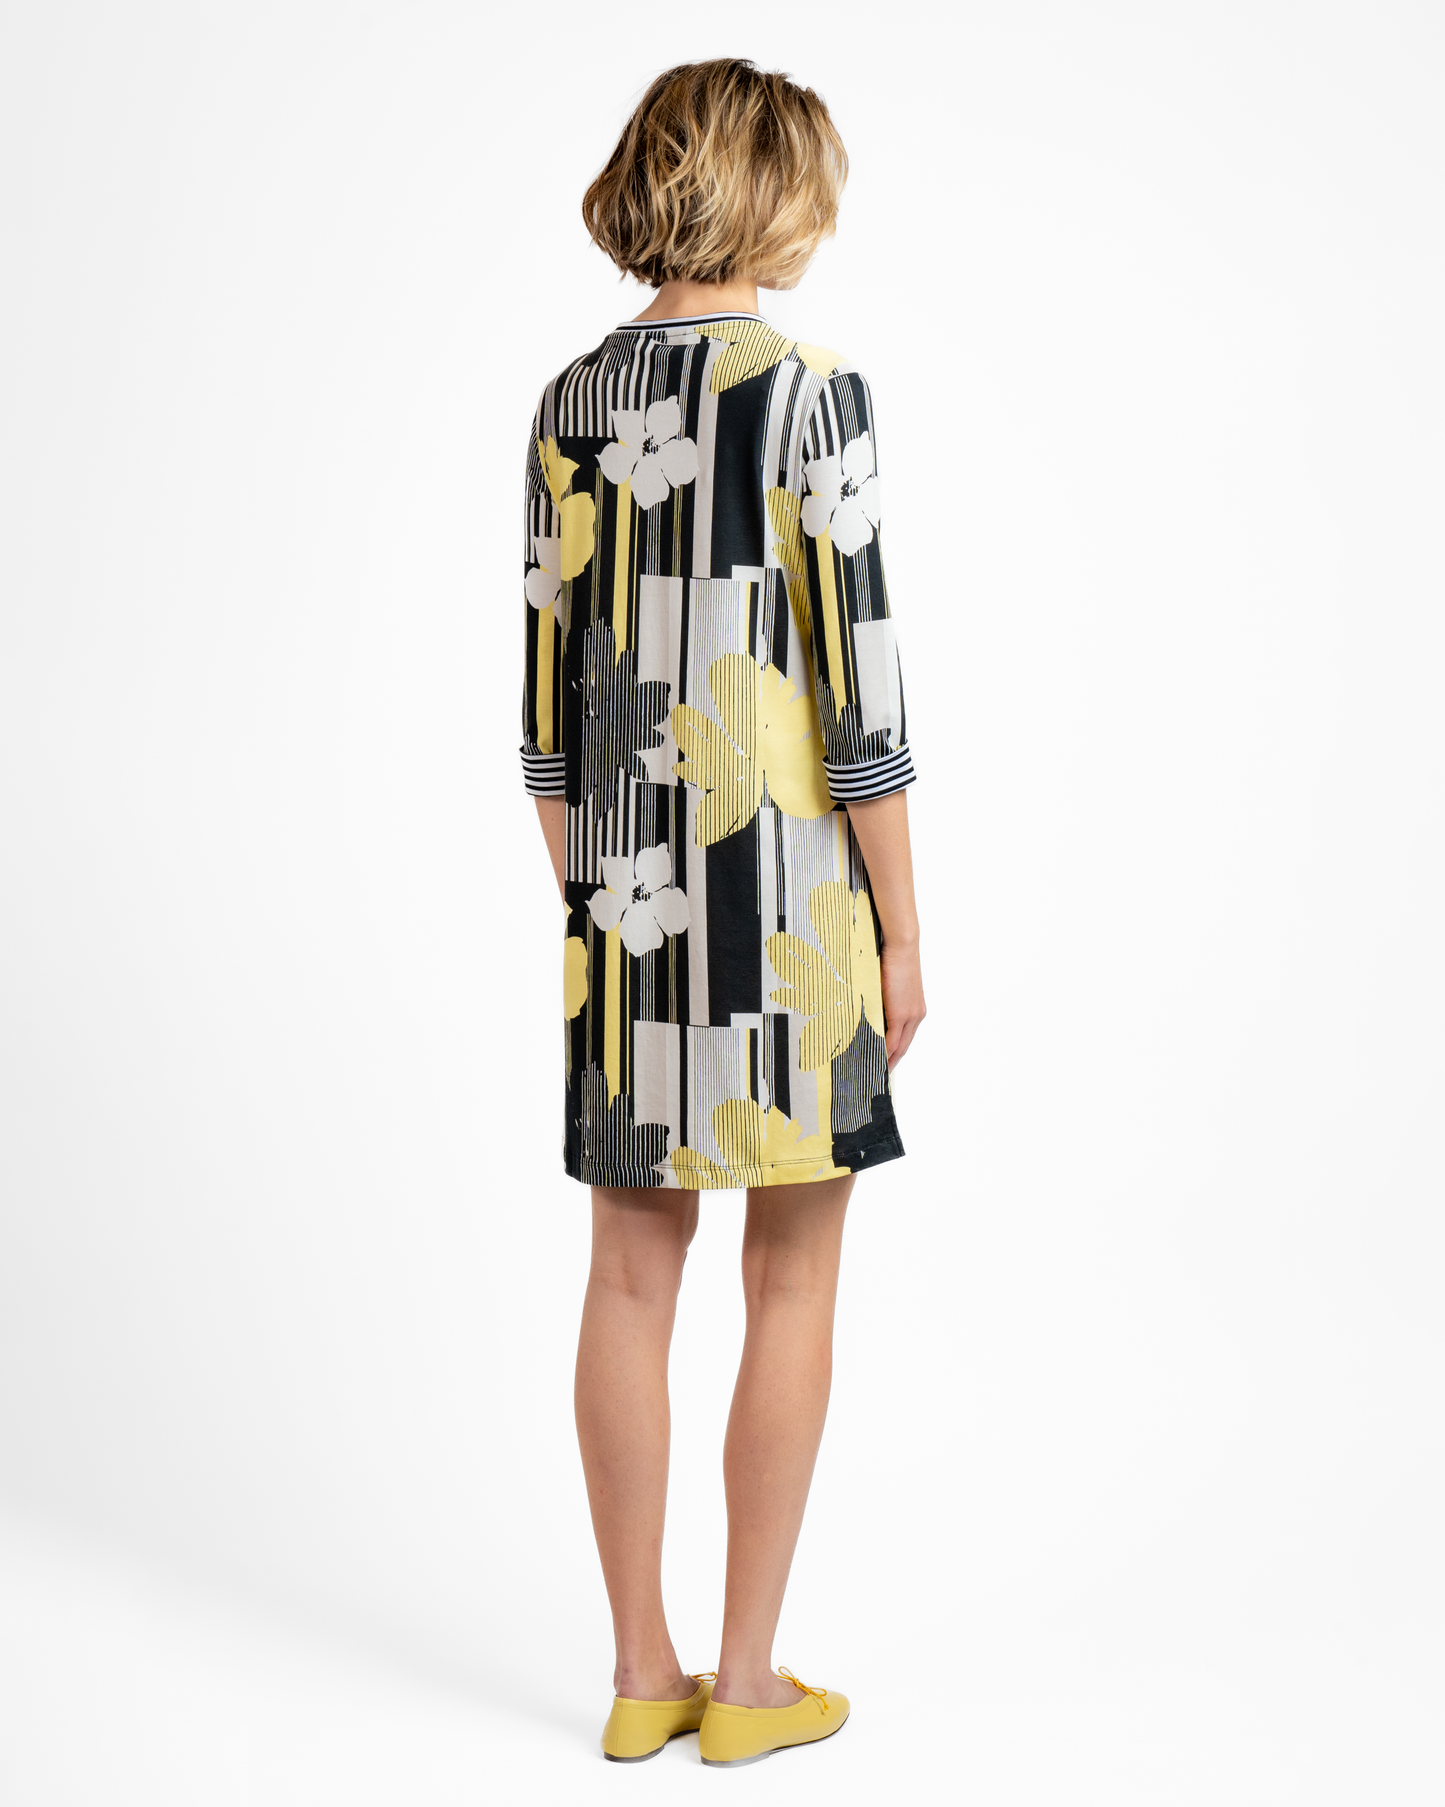 BYLYSE 3/4 Sleeve Print Dress